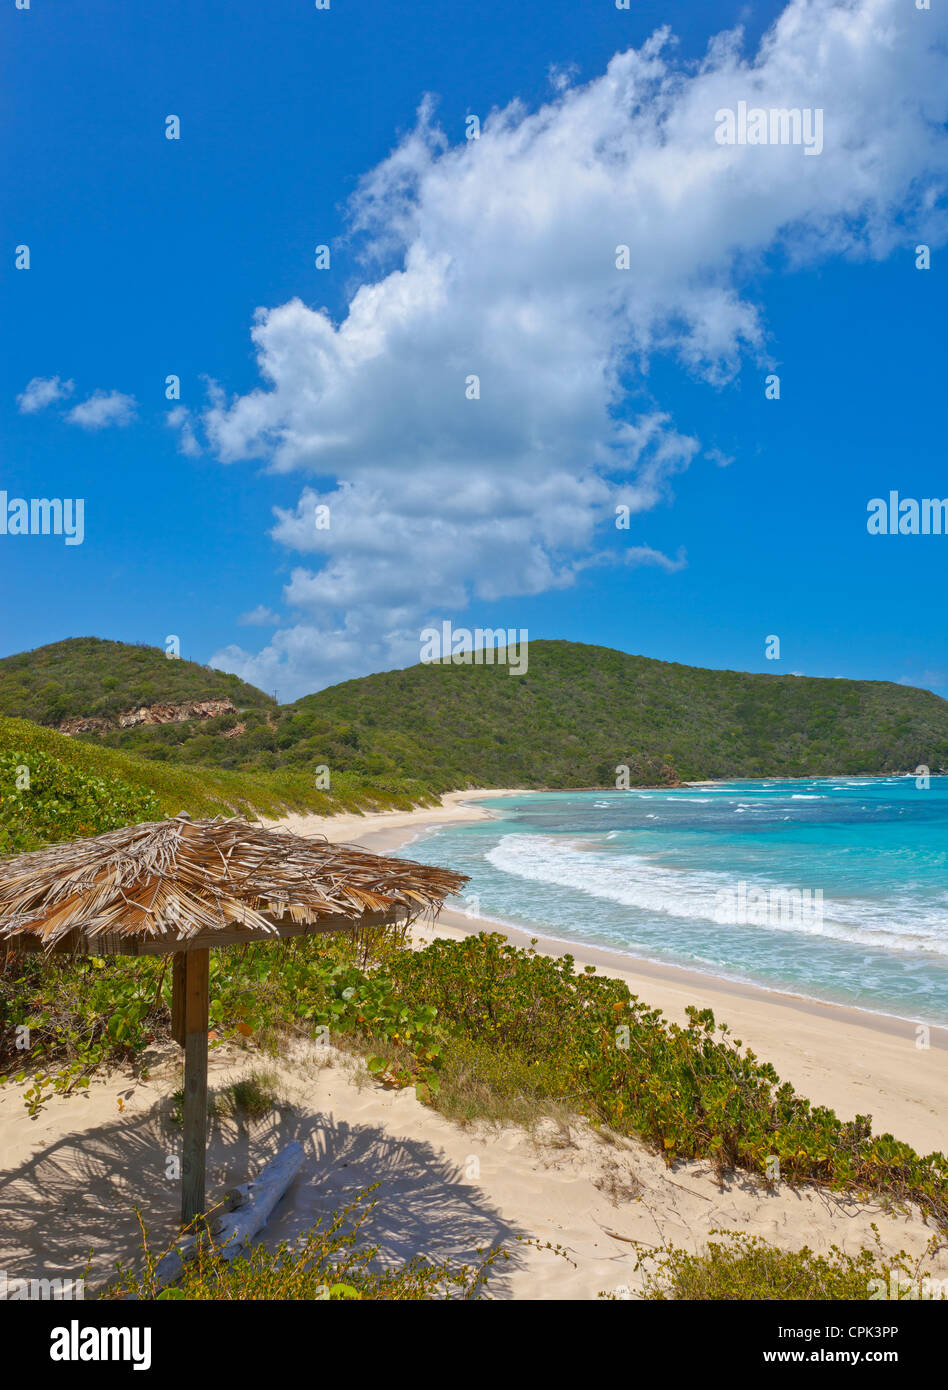 Virgin Gorda, îles Vierges britanniques, les Caraïbes palapa sur la plage de Savannah Bay Banque D'Images